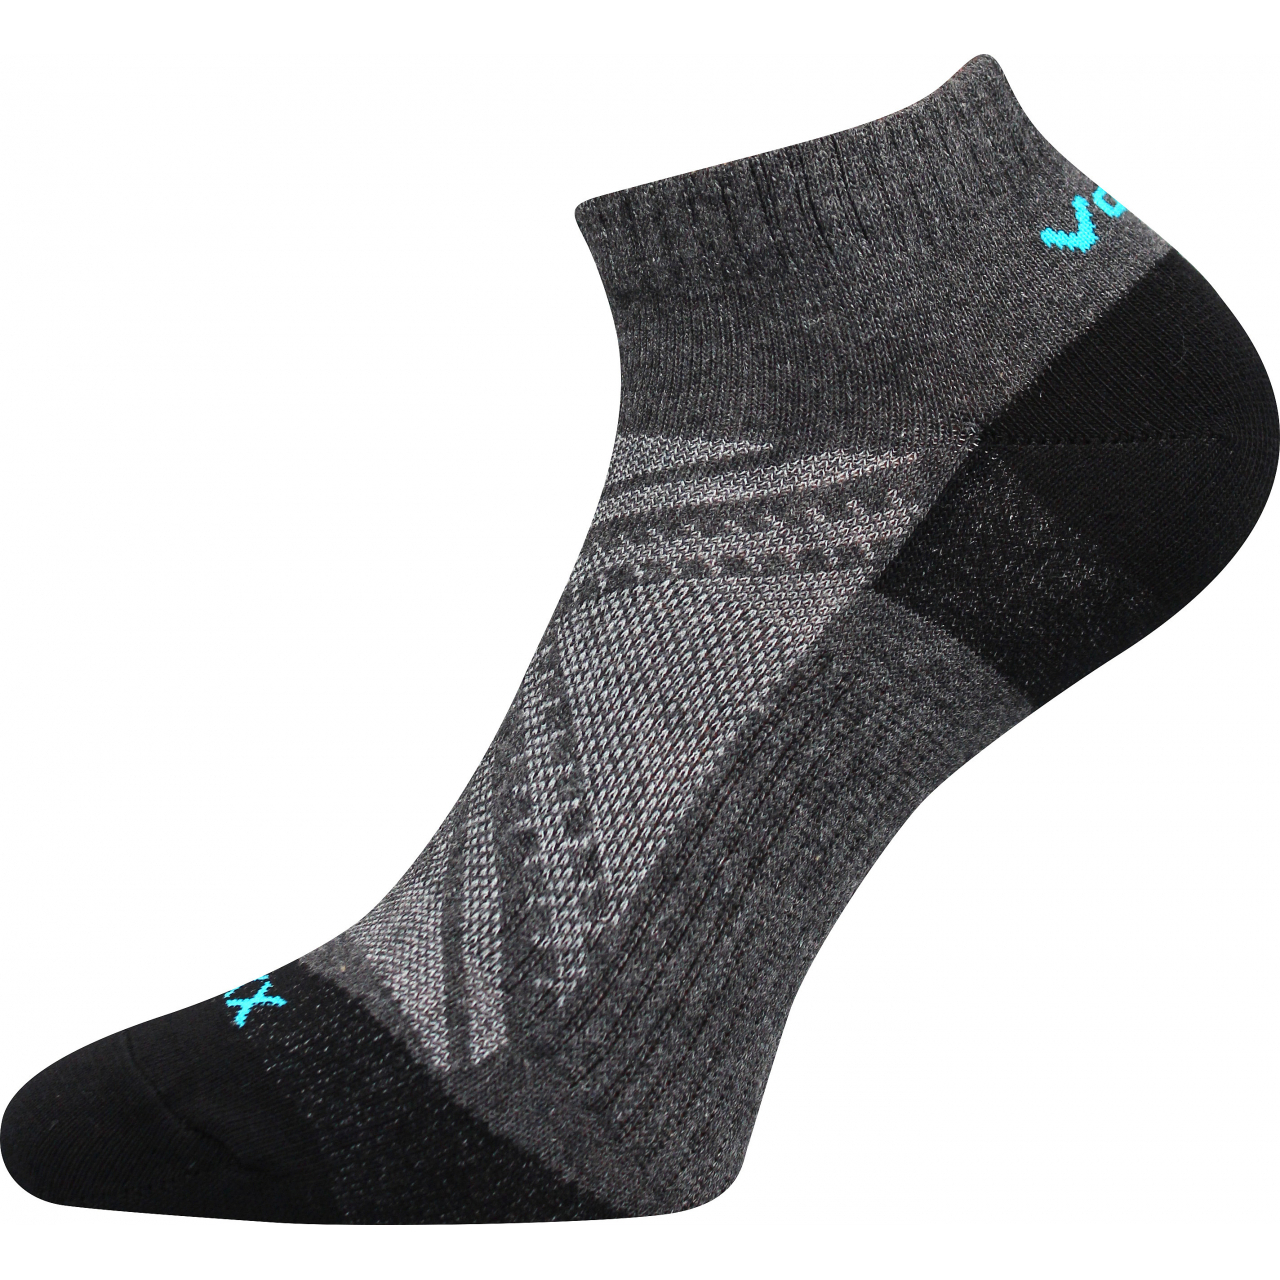 Ponožky slabé unisex Voxx Rex 15 - tmavě šedé, 39-42